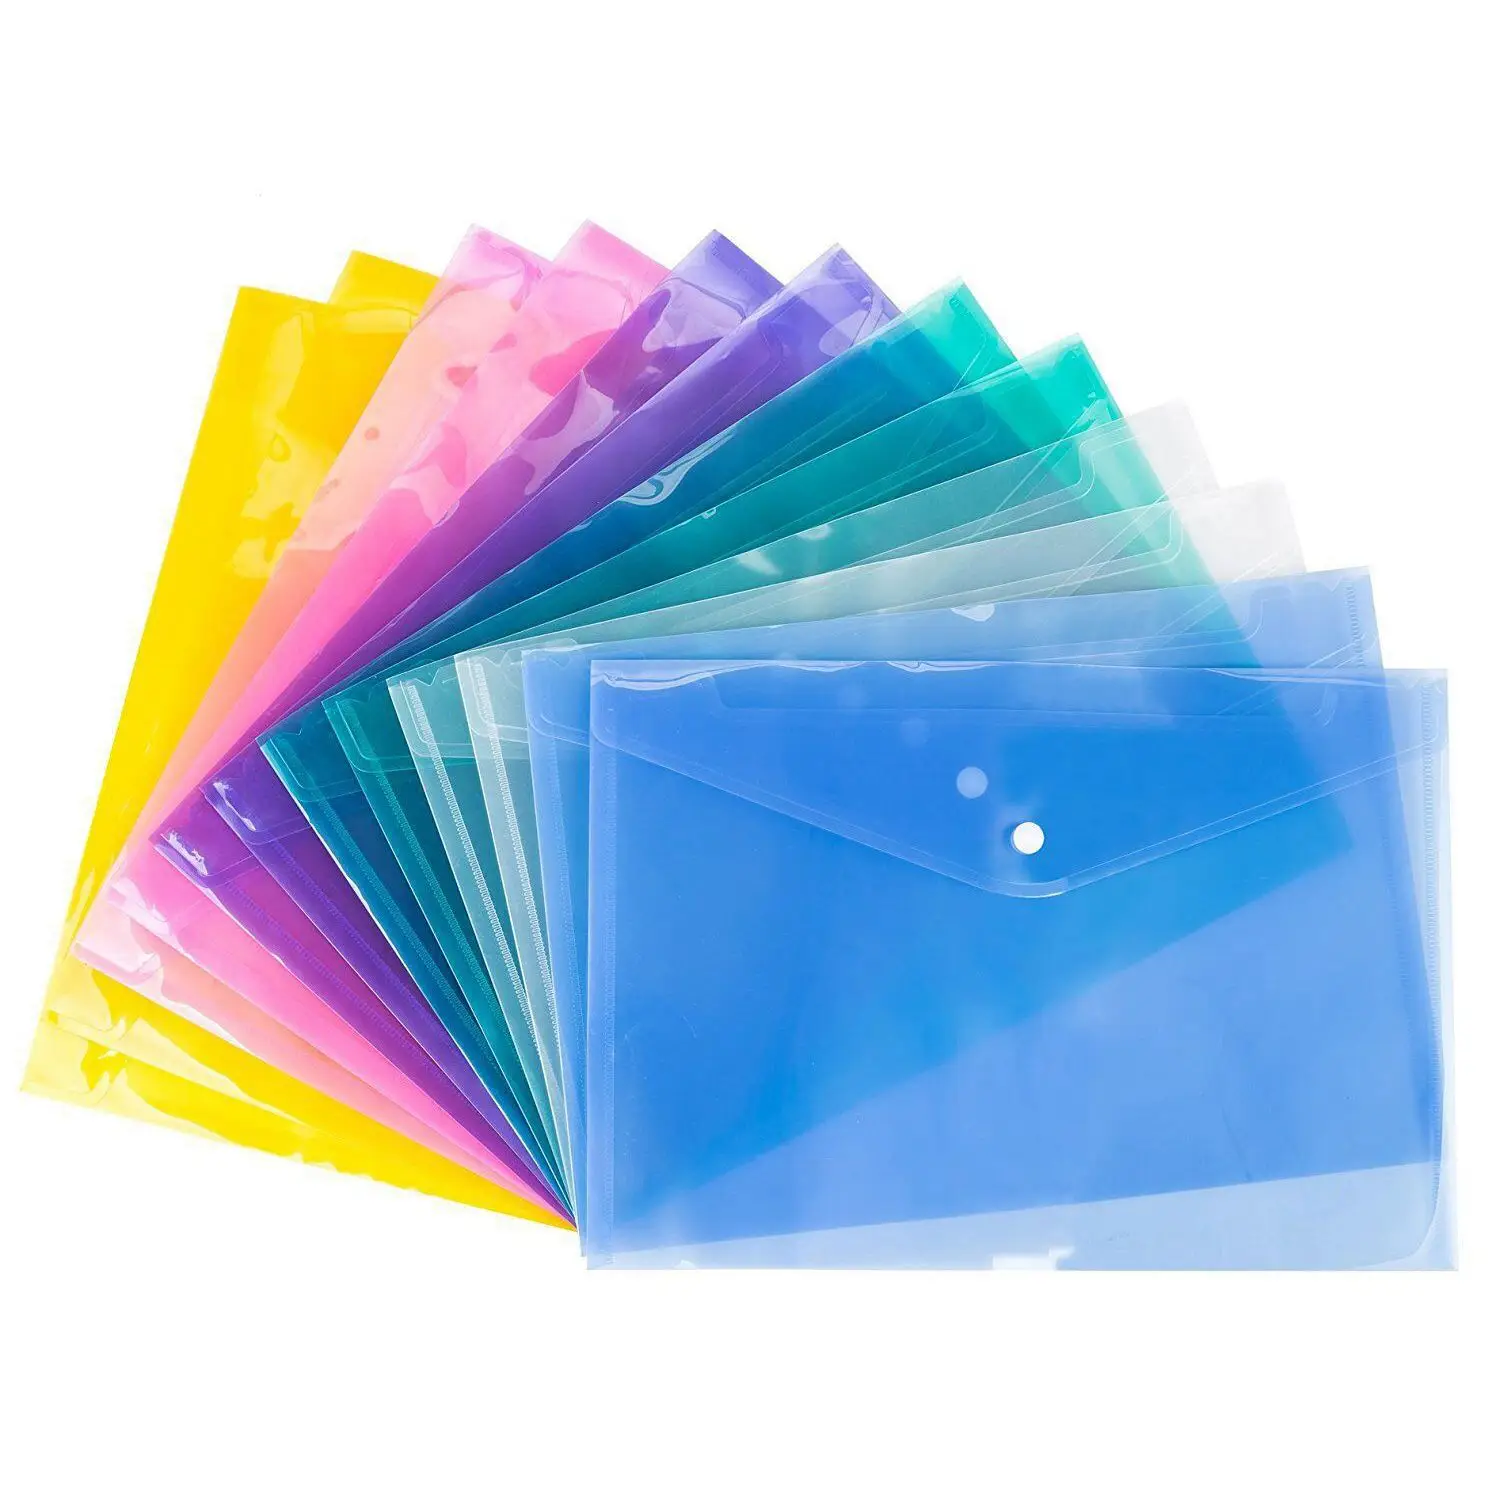 A4 документ кошельки Пластиковые Поппер папки Пряжка подача бумаги хранения, разные цвета 12 шт